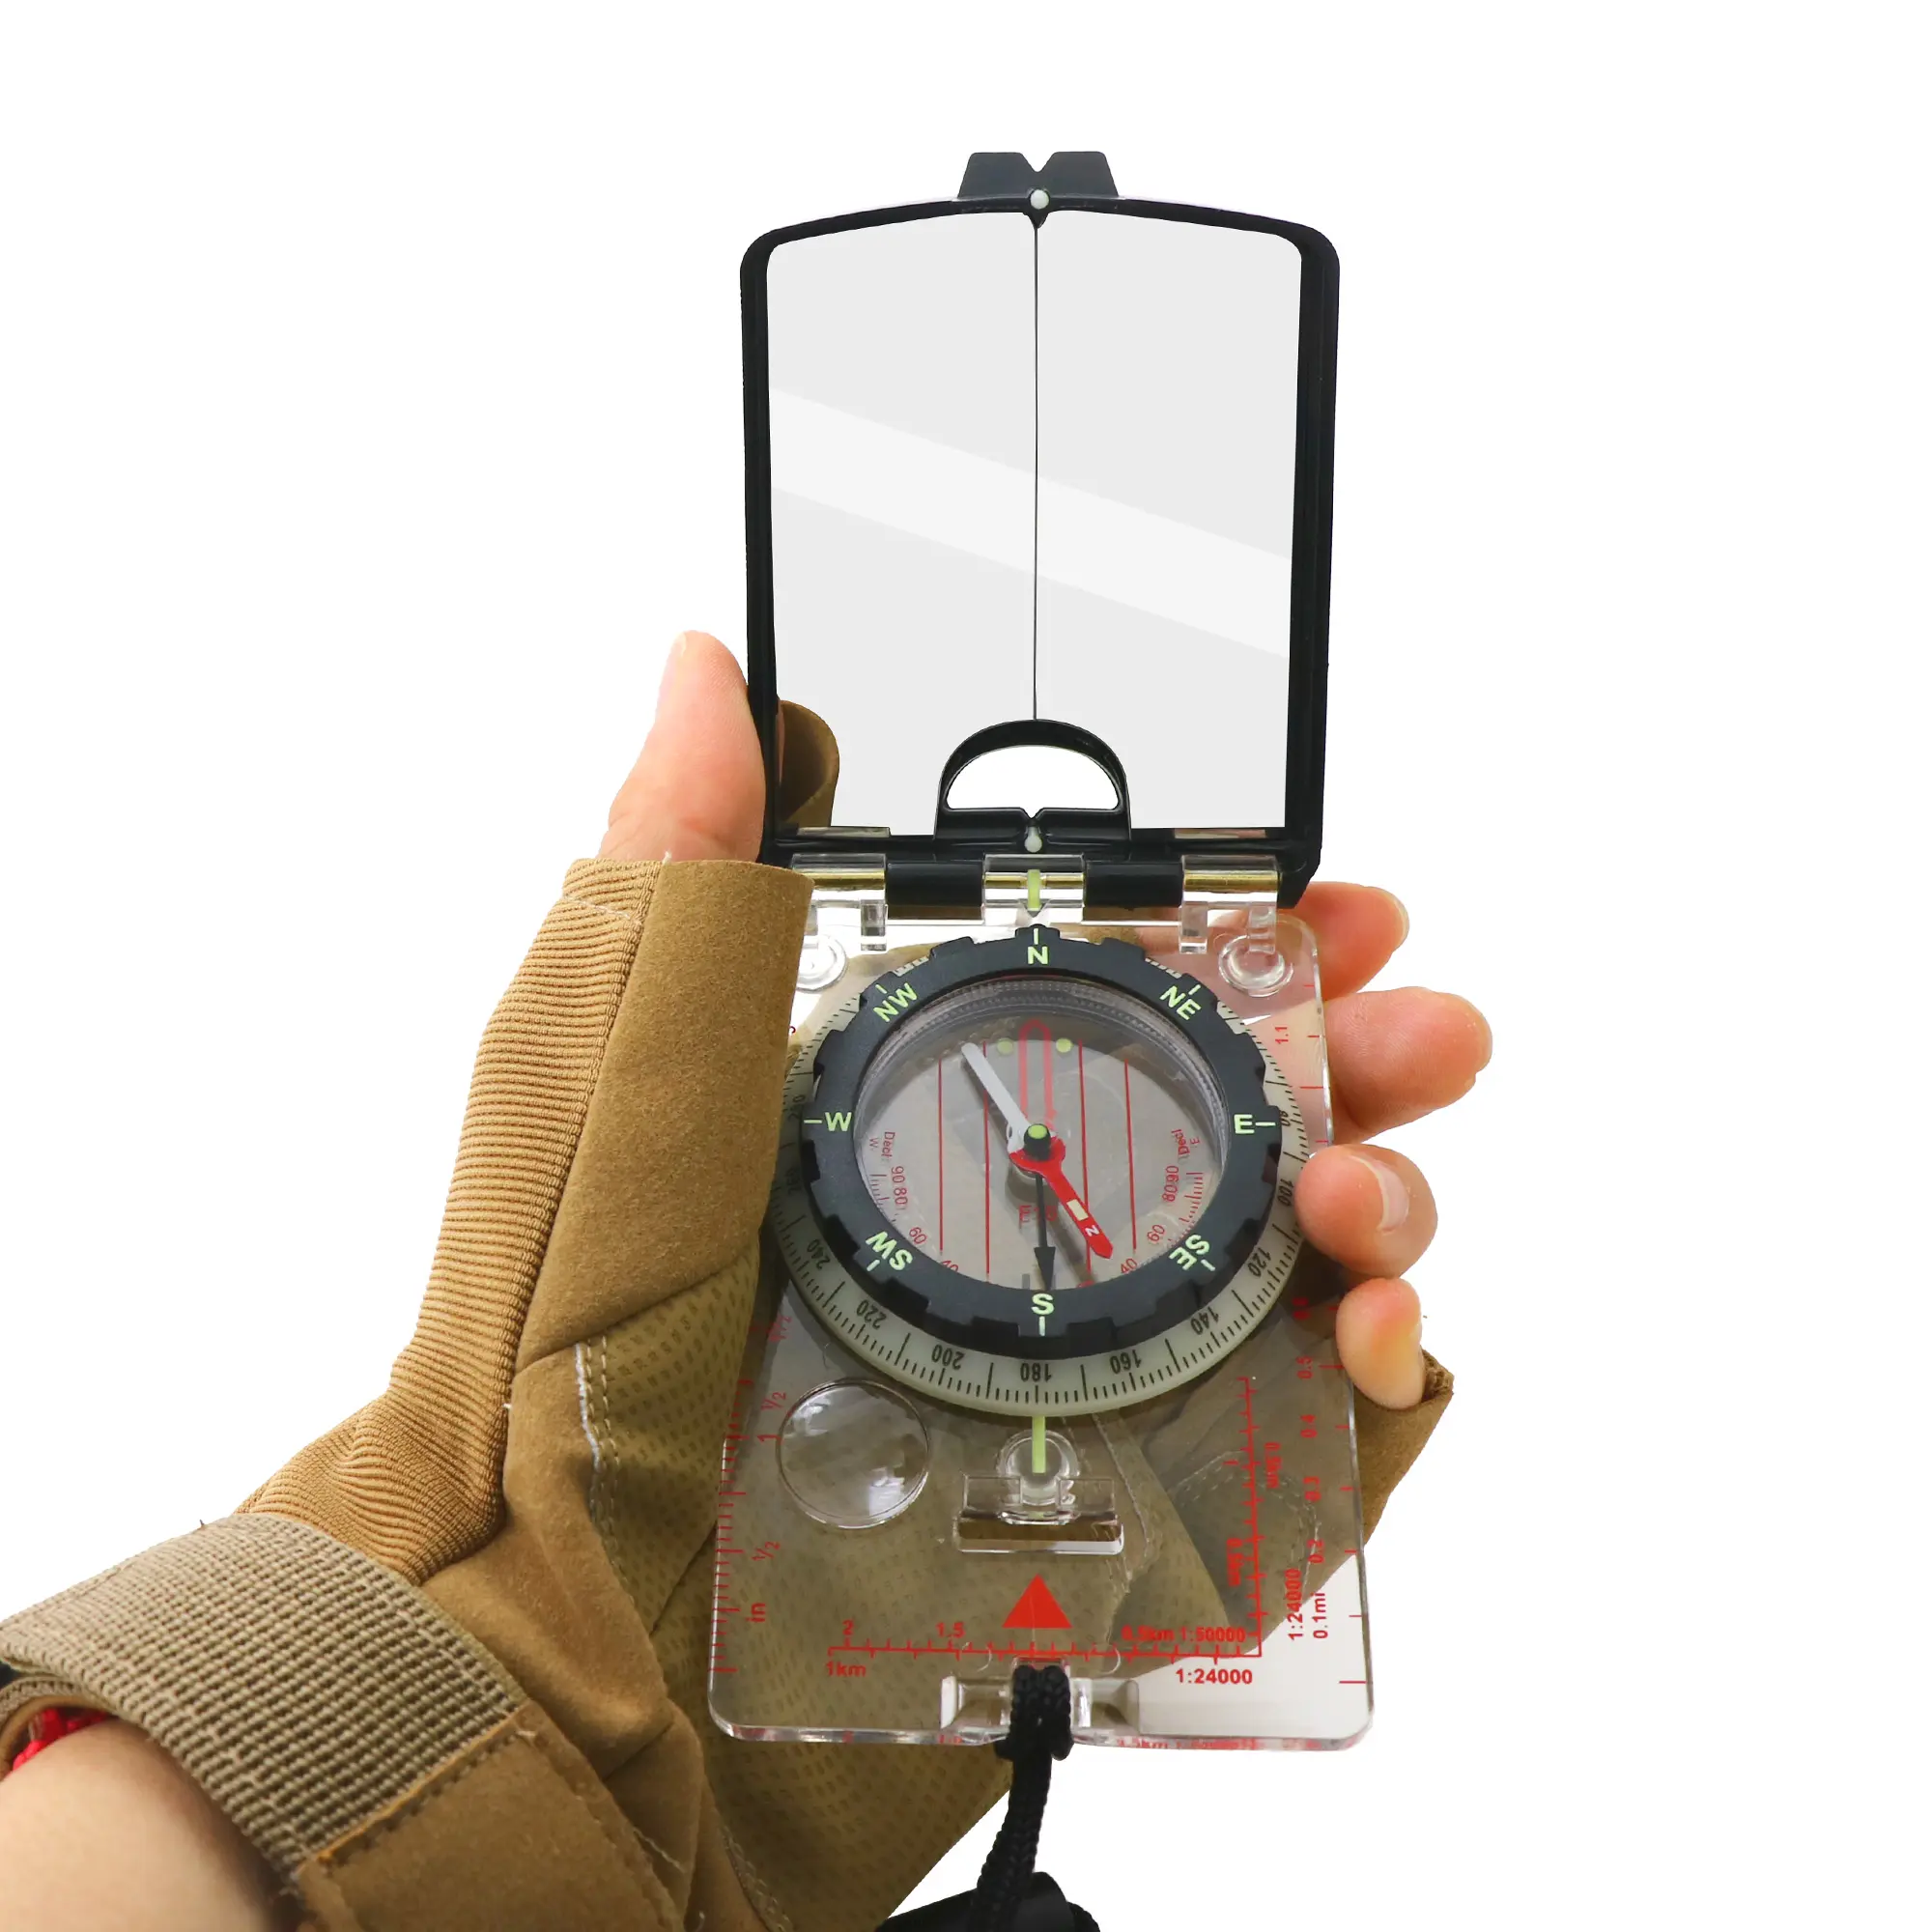 Compasso de bolso para visão ajustável, placa de base para visão de sobrevivência com espelho de emergência, novo produto com serviço do oem para venda